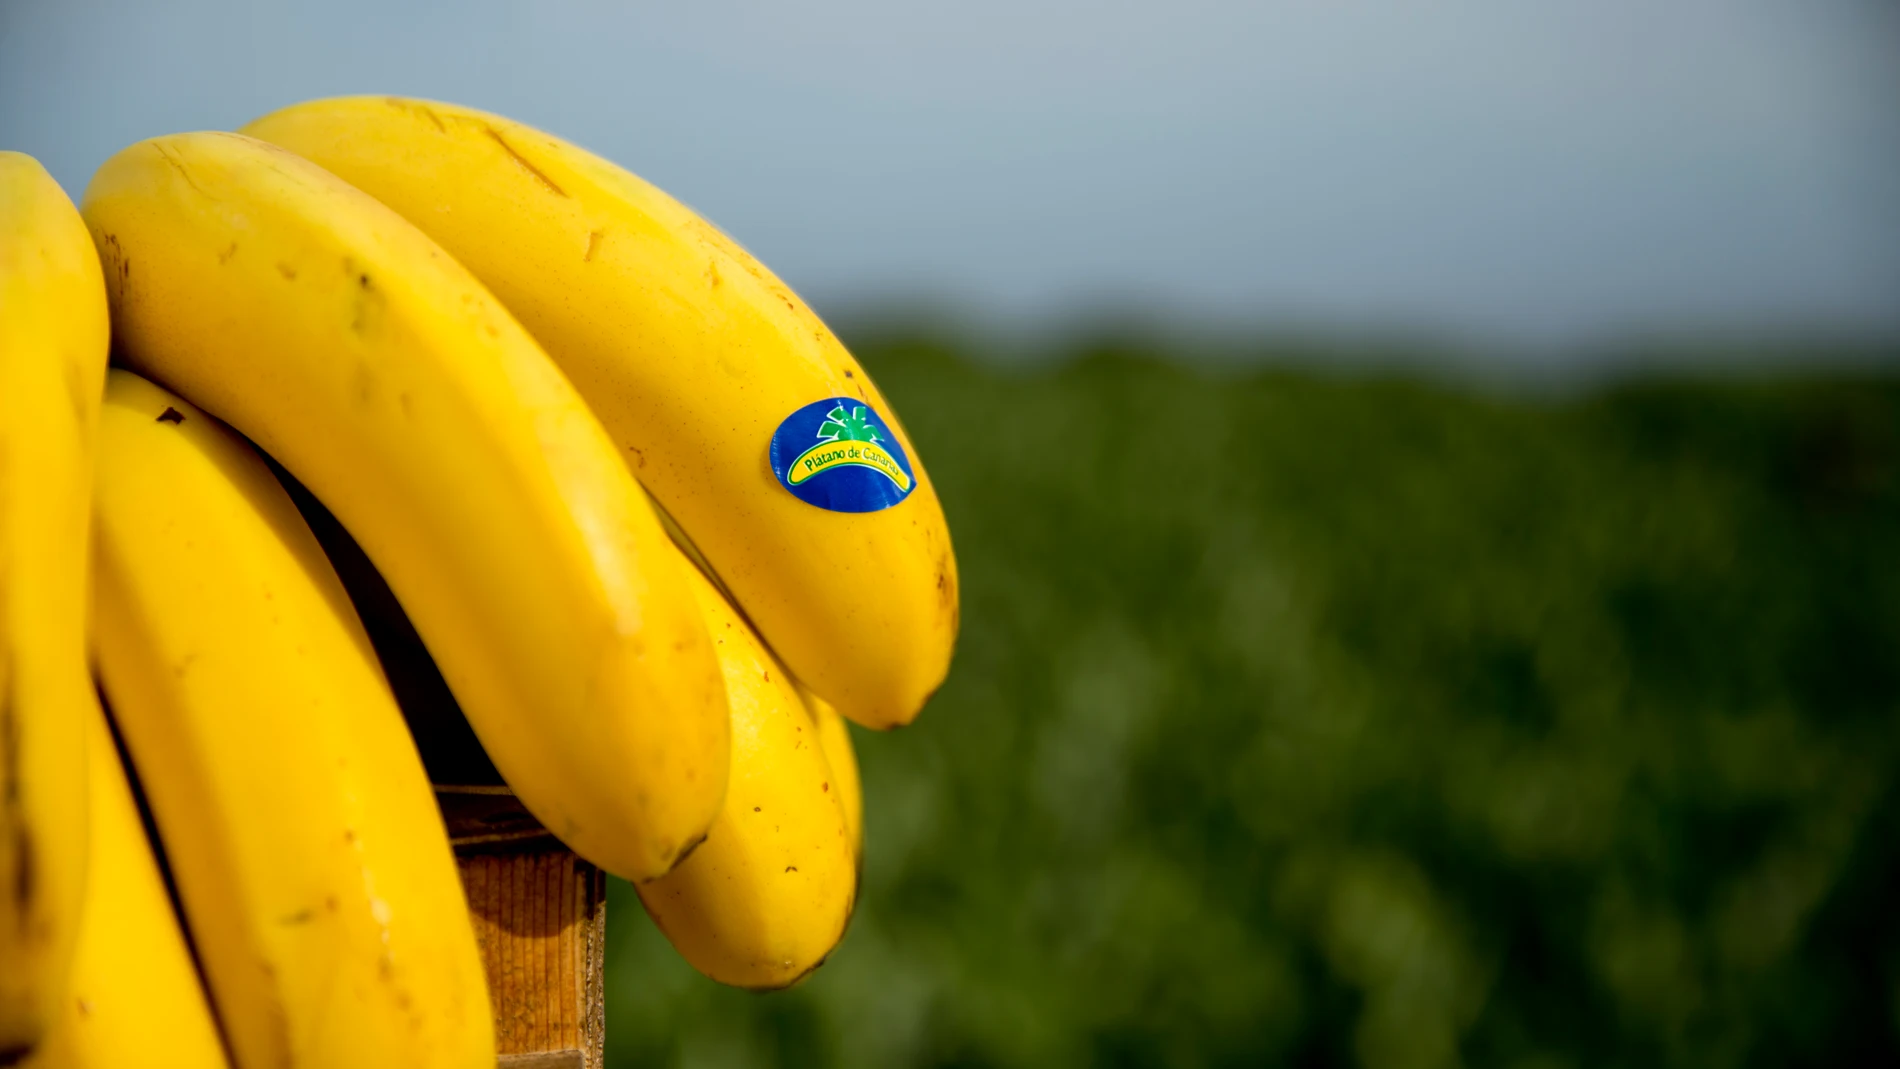 El plátano es una de las frutas más consumidas en España durante todo el año